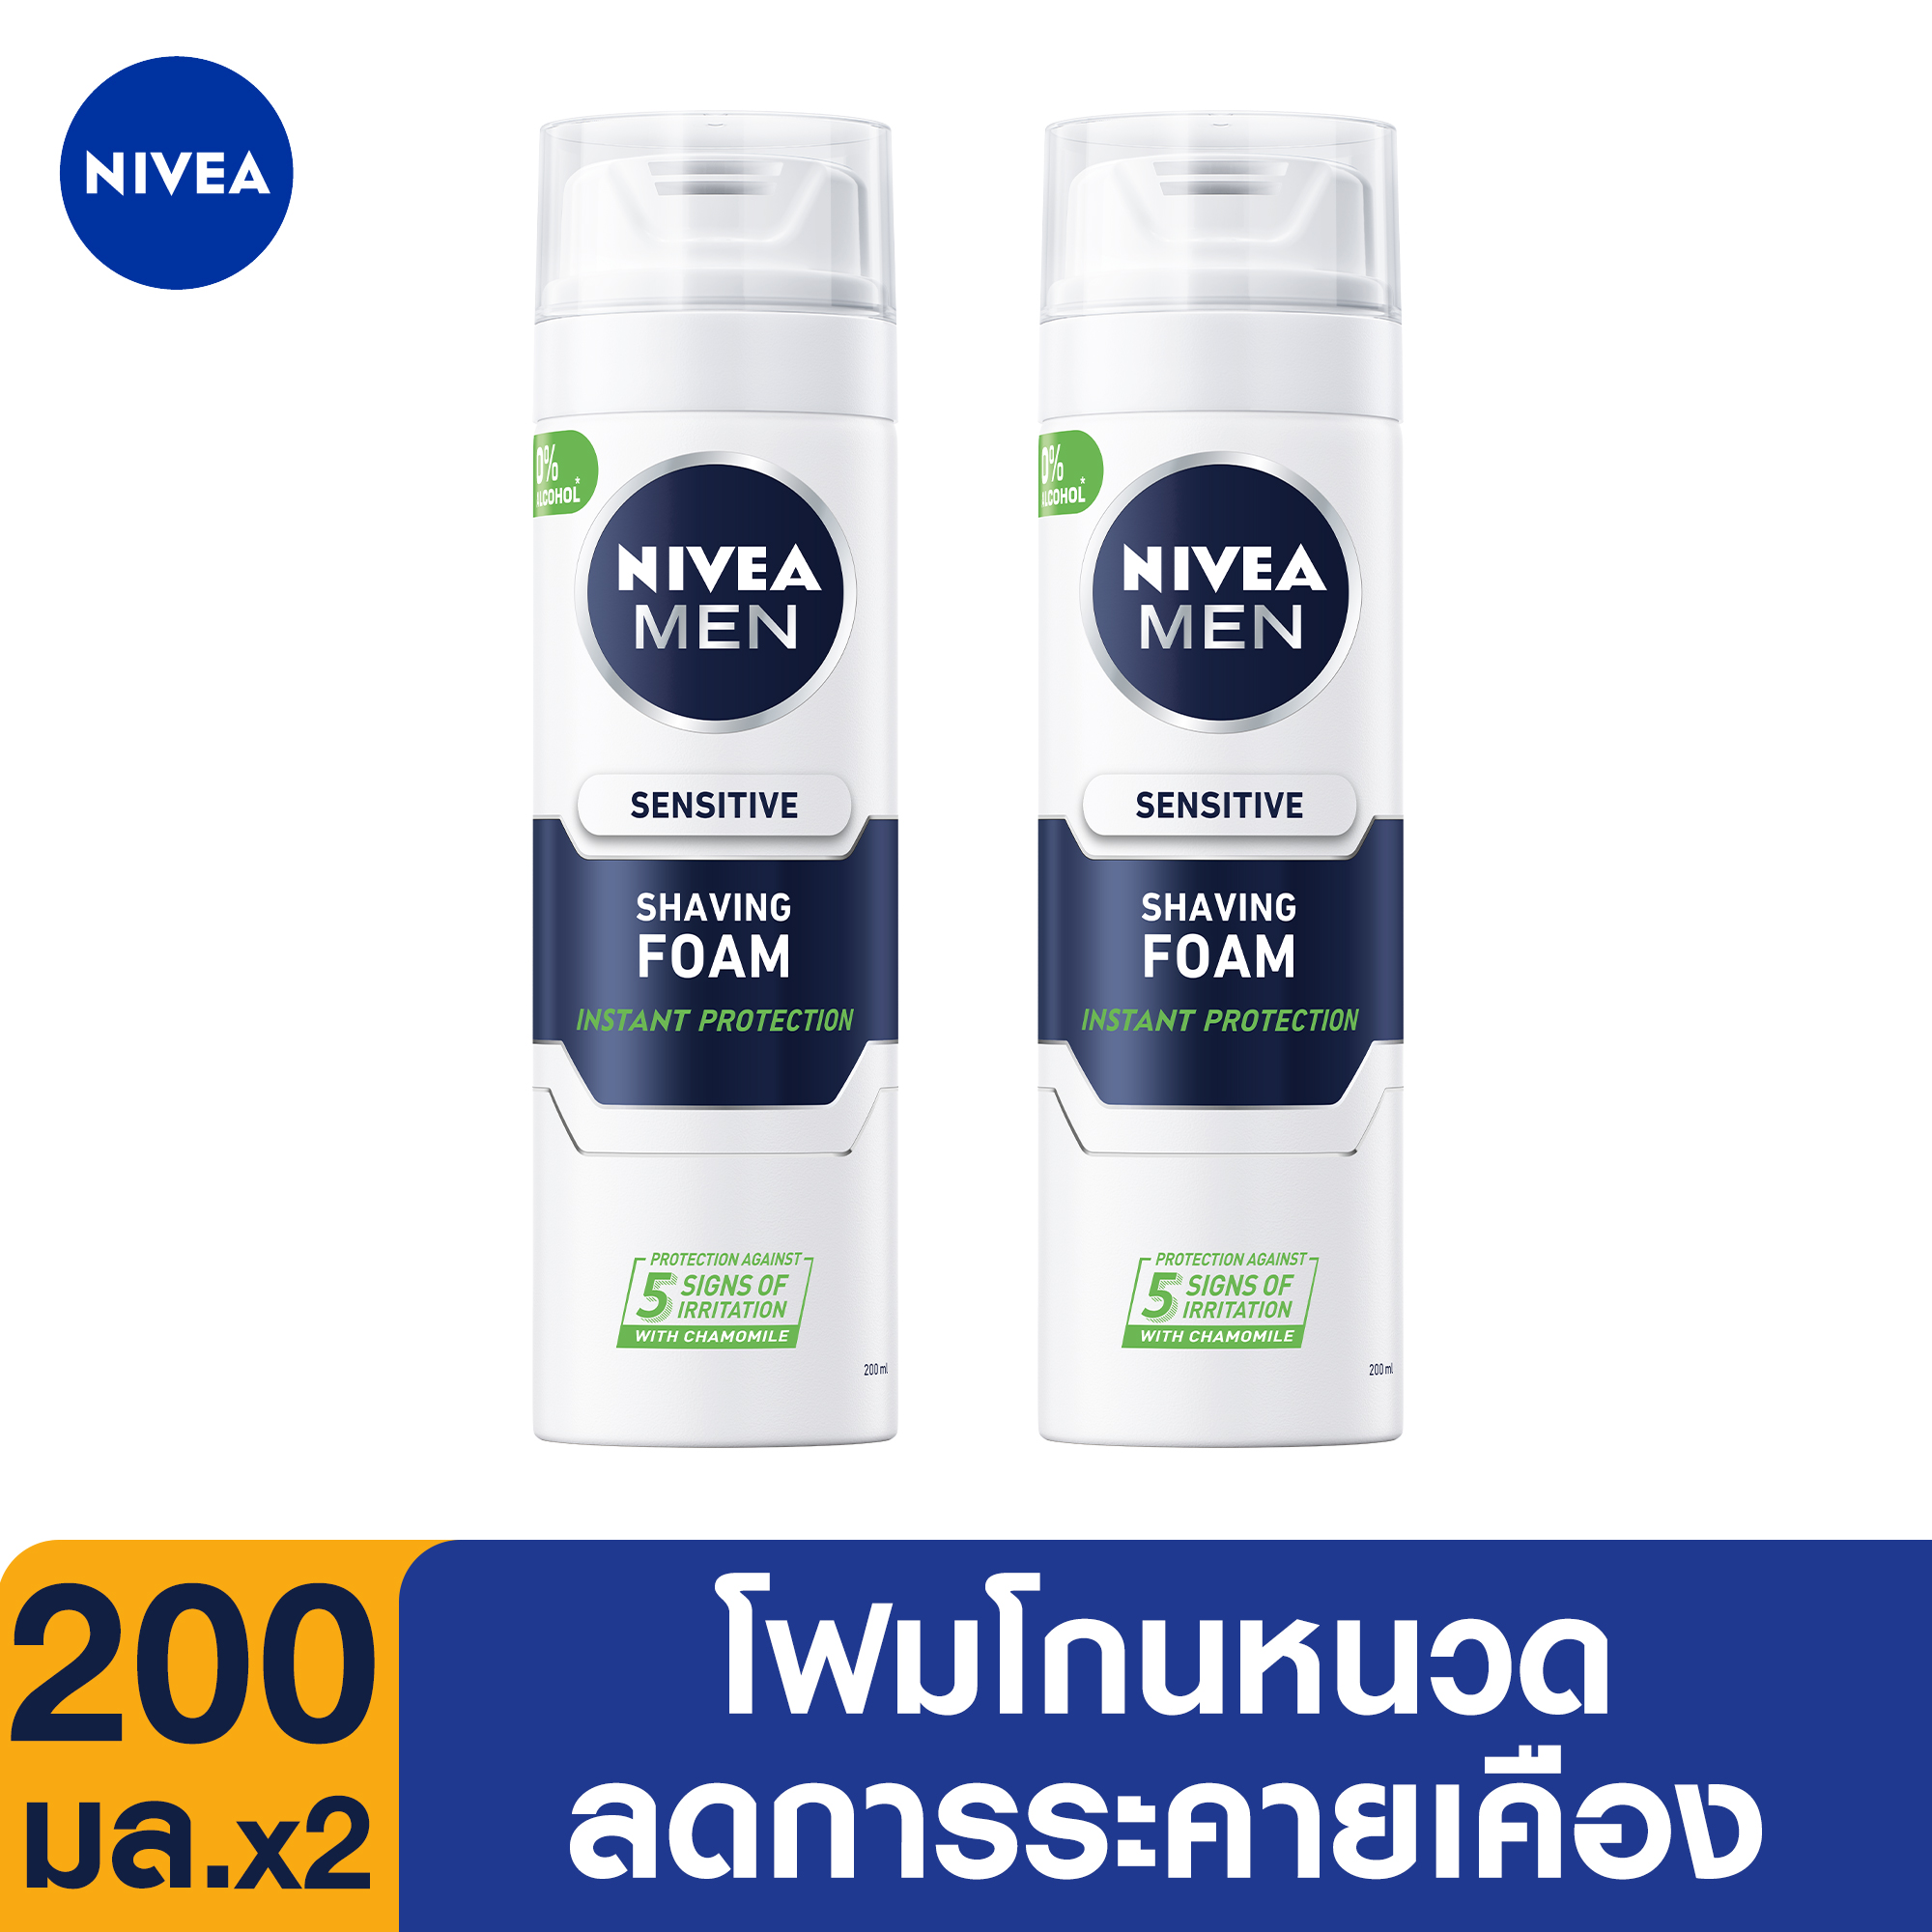 [ส่งฟรี] นีเวีย เมน ครีมโกนหนวด โพรเทค แอนด์ แคร์ เชฟวิ่ง 200 มล. 2 ชิ้น NIVEA Men Sensitive Protect Shaving Foam 200 ml. 2 pcs  (โฟมโกนหนวด, สำหรับผู้ชาย)